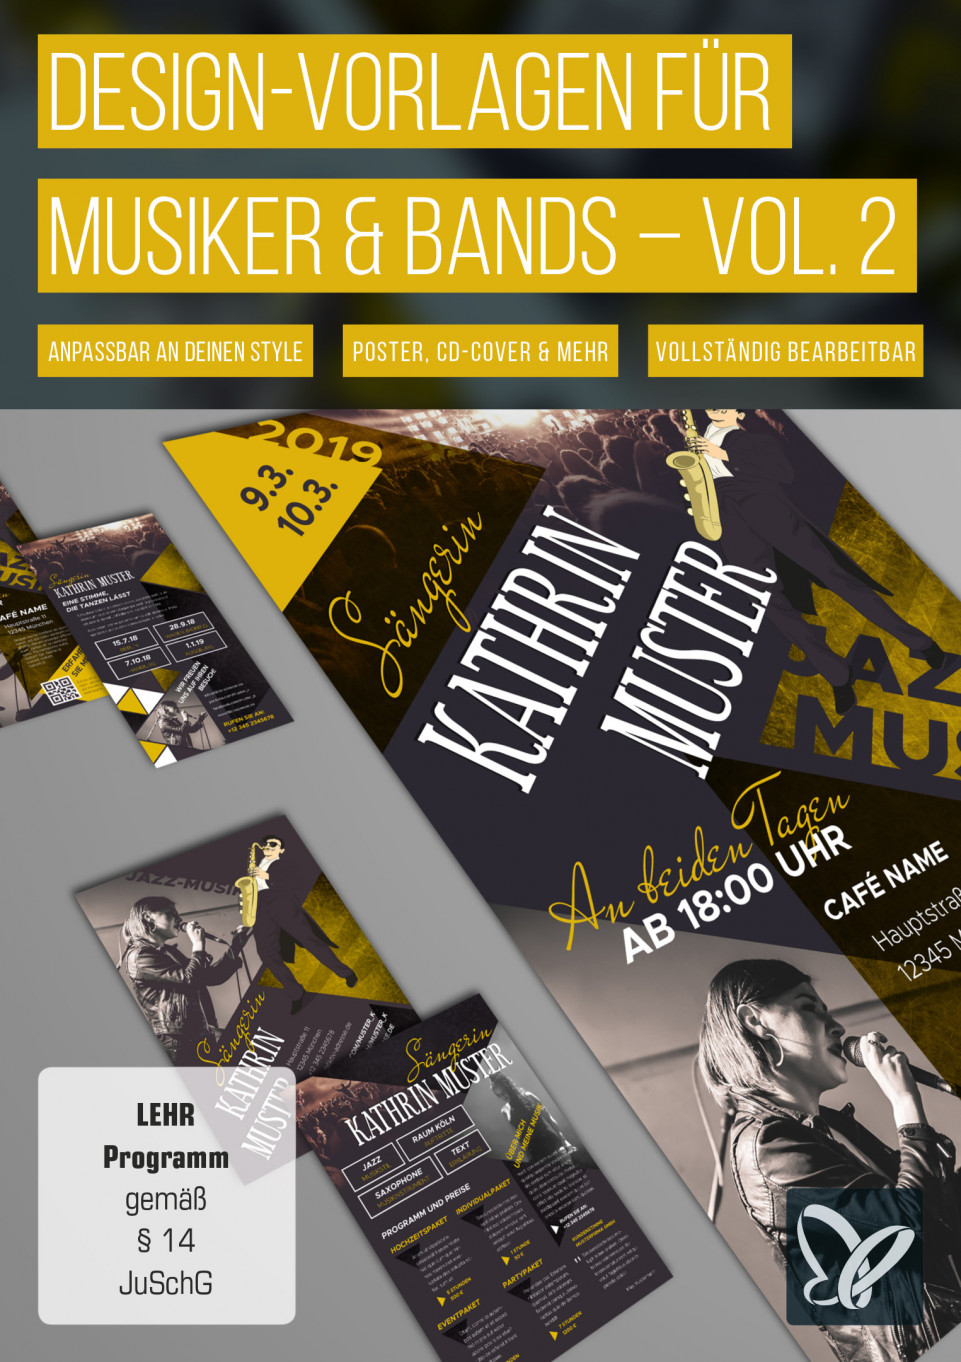 Design-Vorlagen für Musiker & Bands – Vol. 2